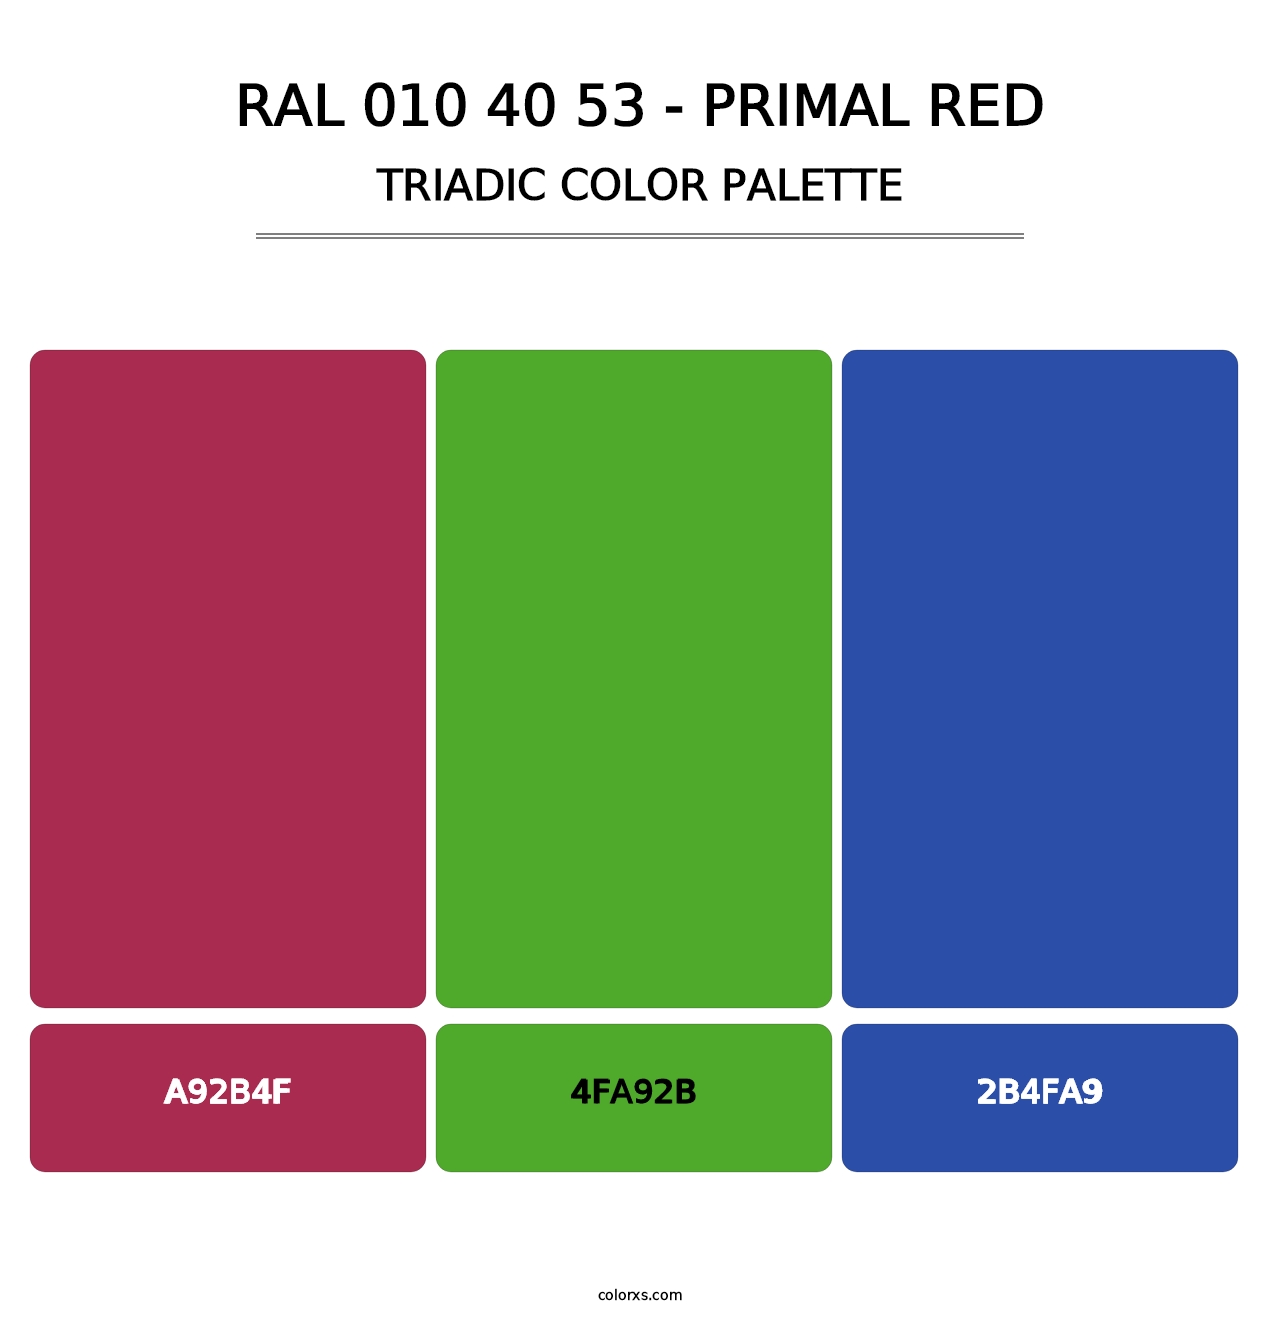 RAL 010 40 53 - Primal Red - Triadic Color Palette